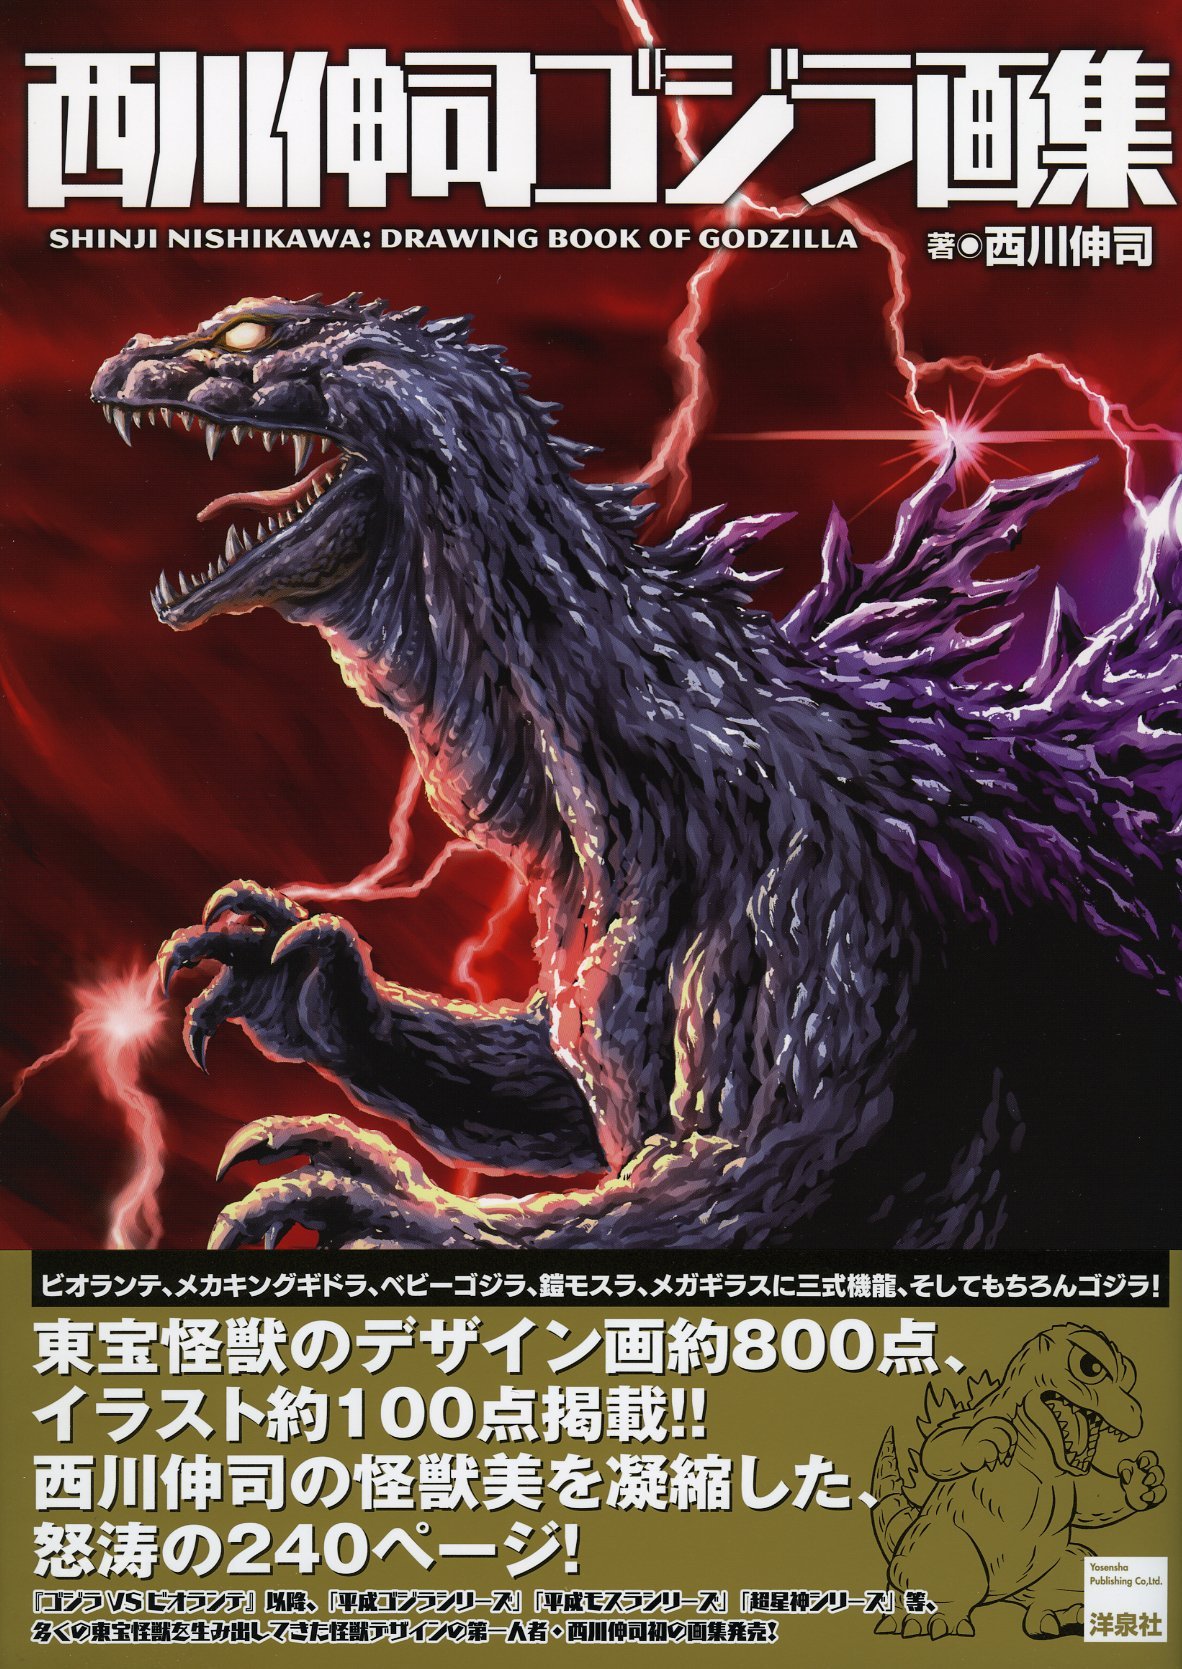 Shinji Nishikawa: Drawing Book of Godzilla | Wikizilla, the kaiju